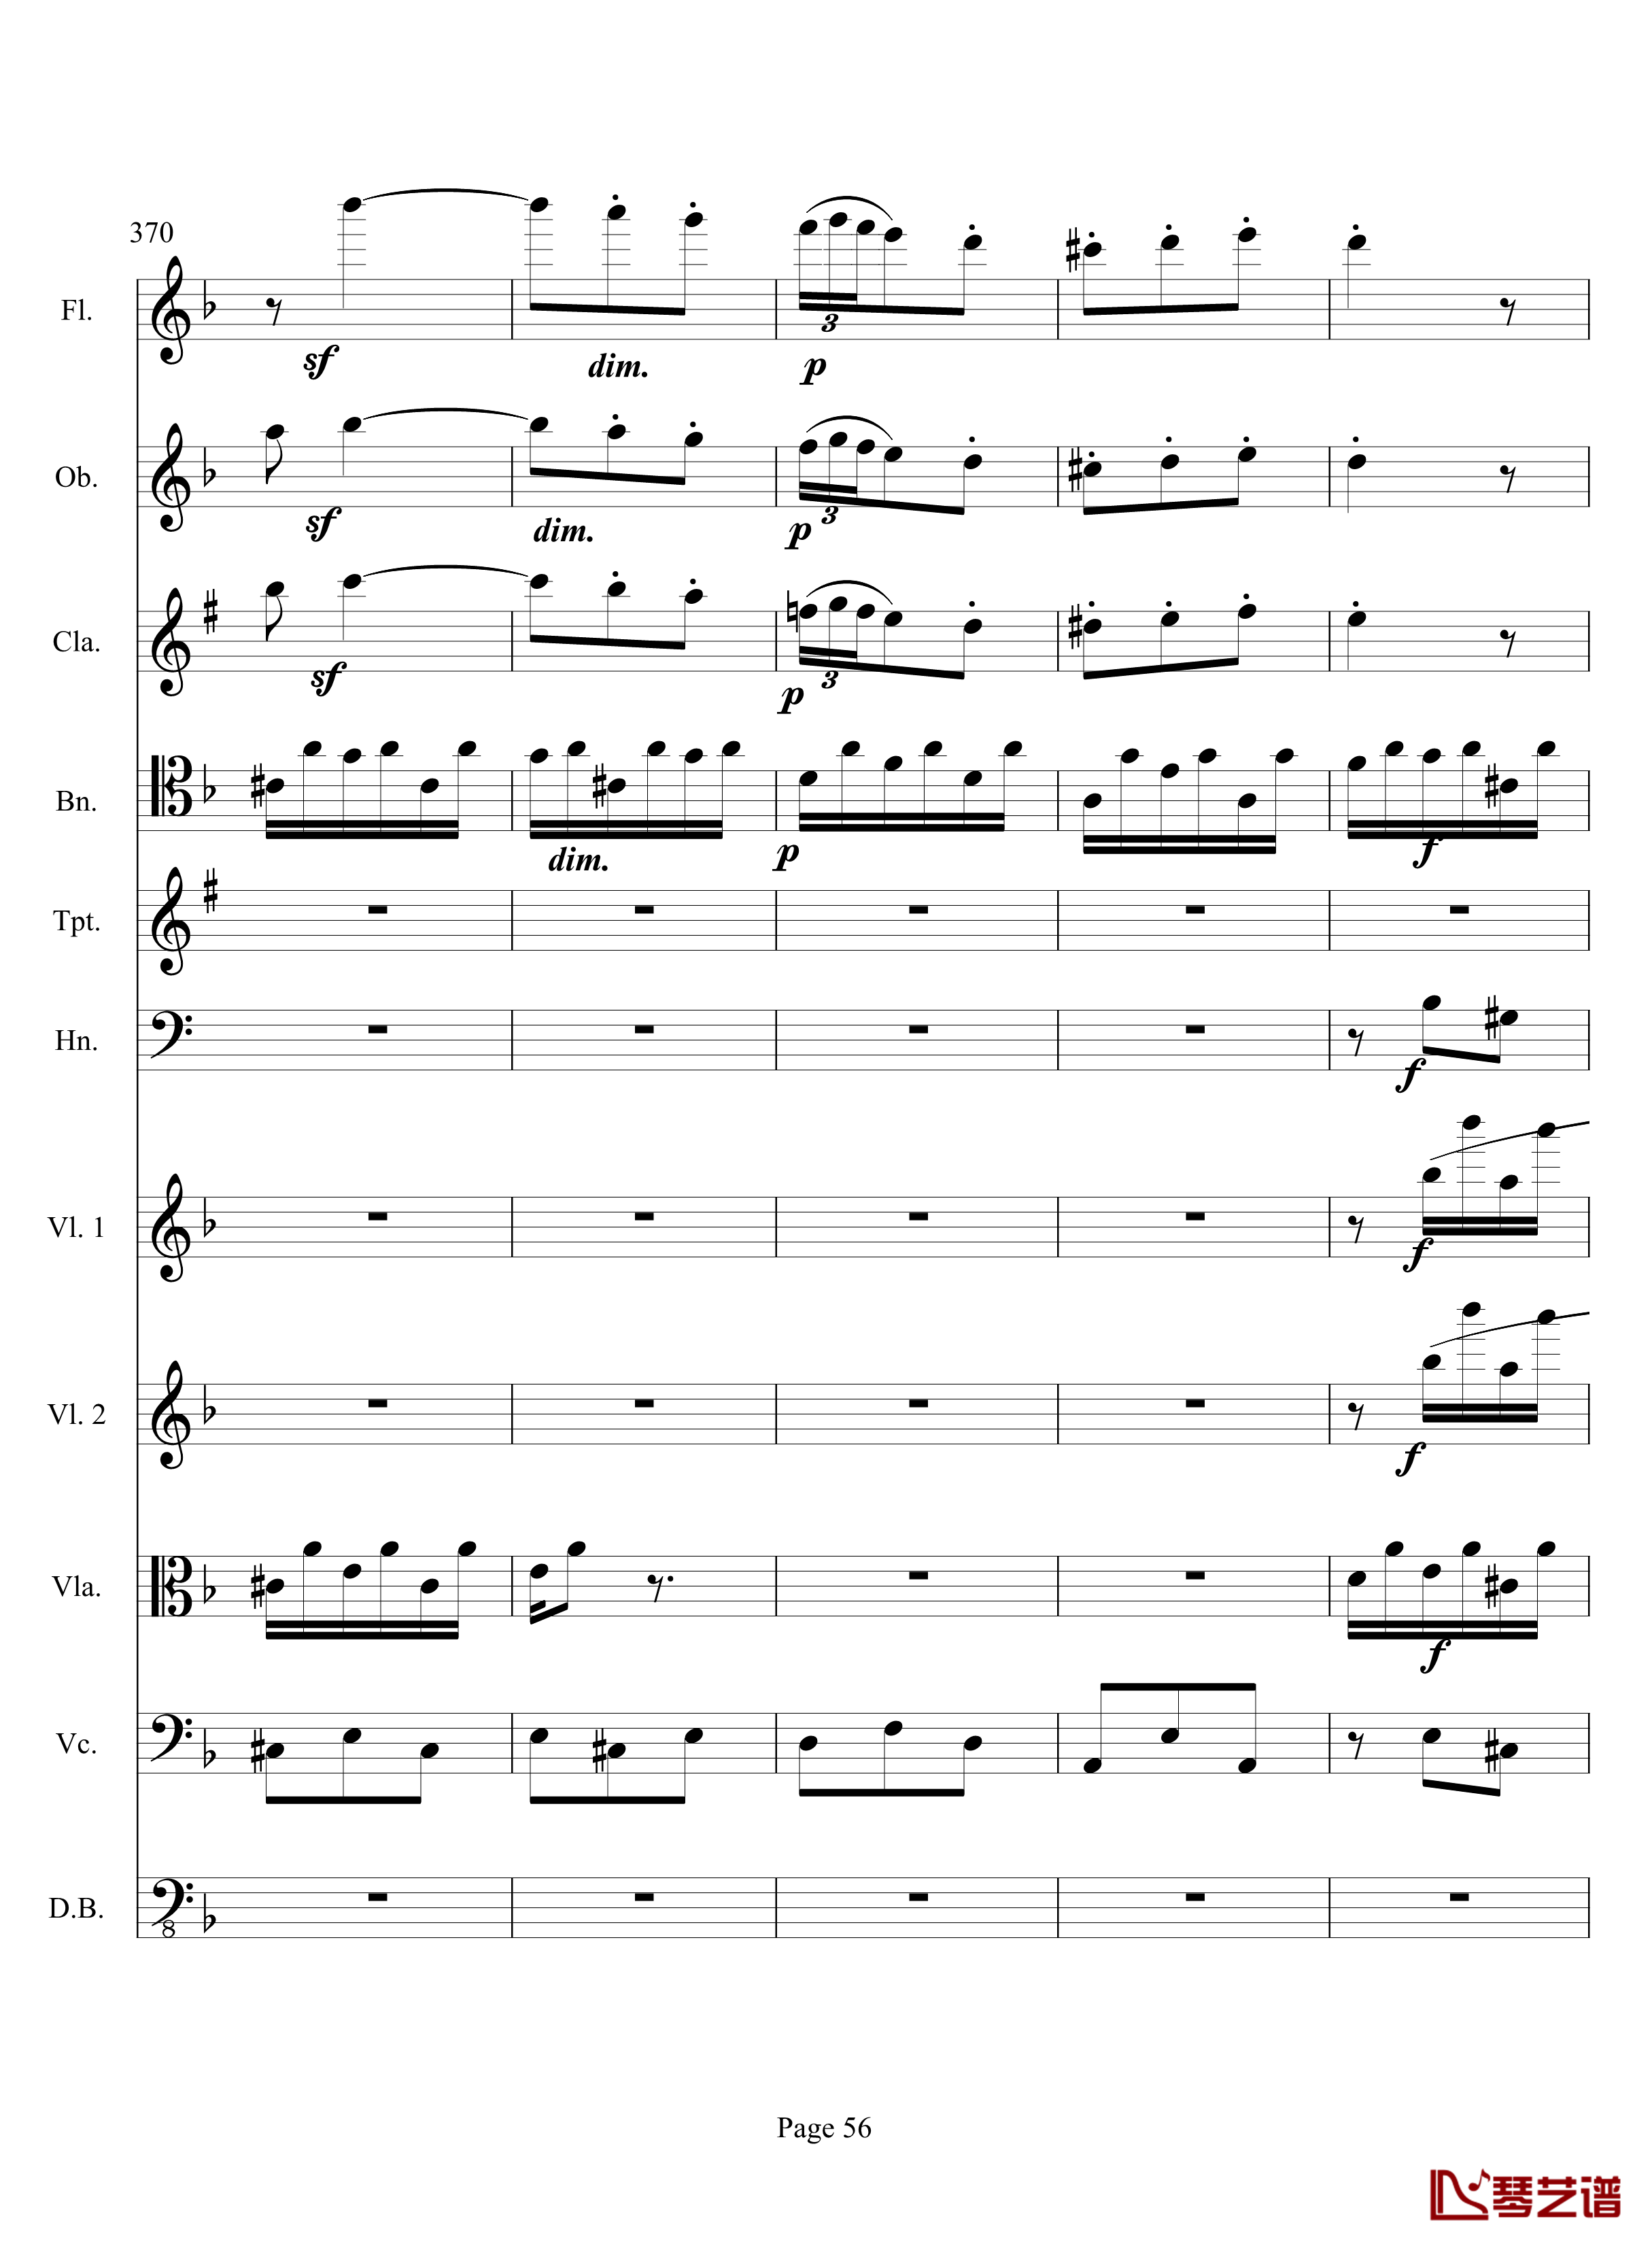 奏鸣曲之交响钢琴谱-第17首-Ⅲ-贝多芬-beethoven56